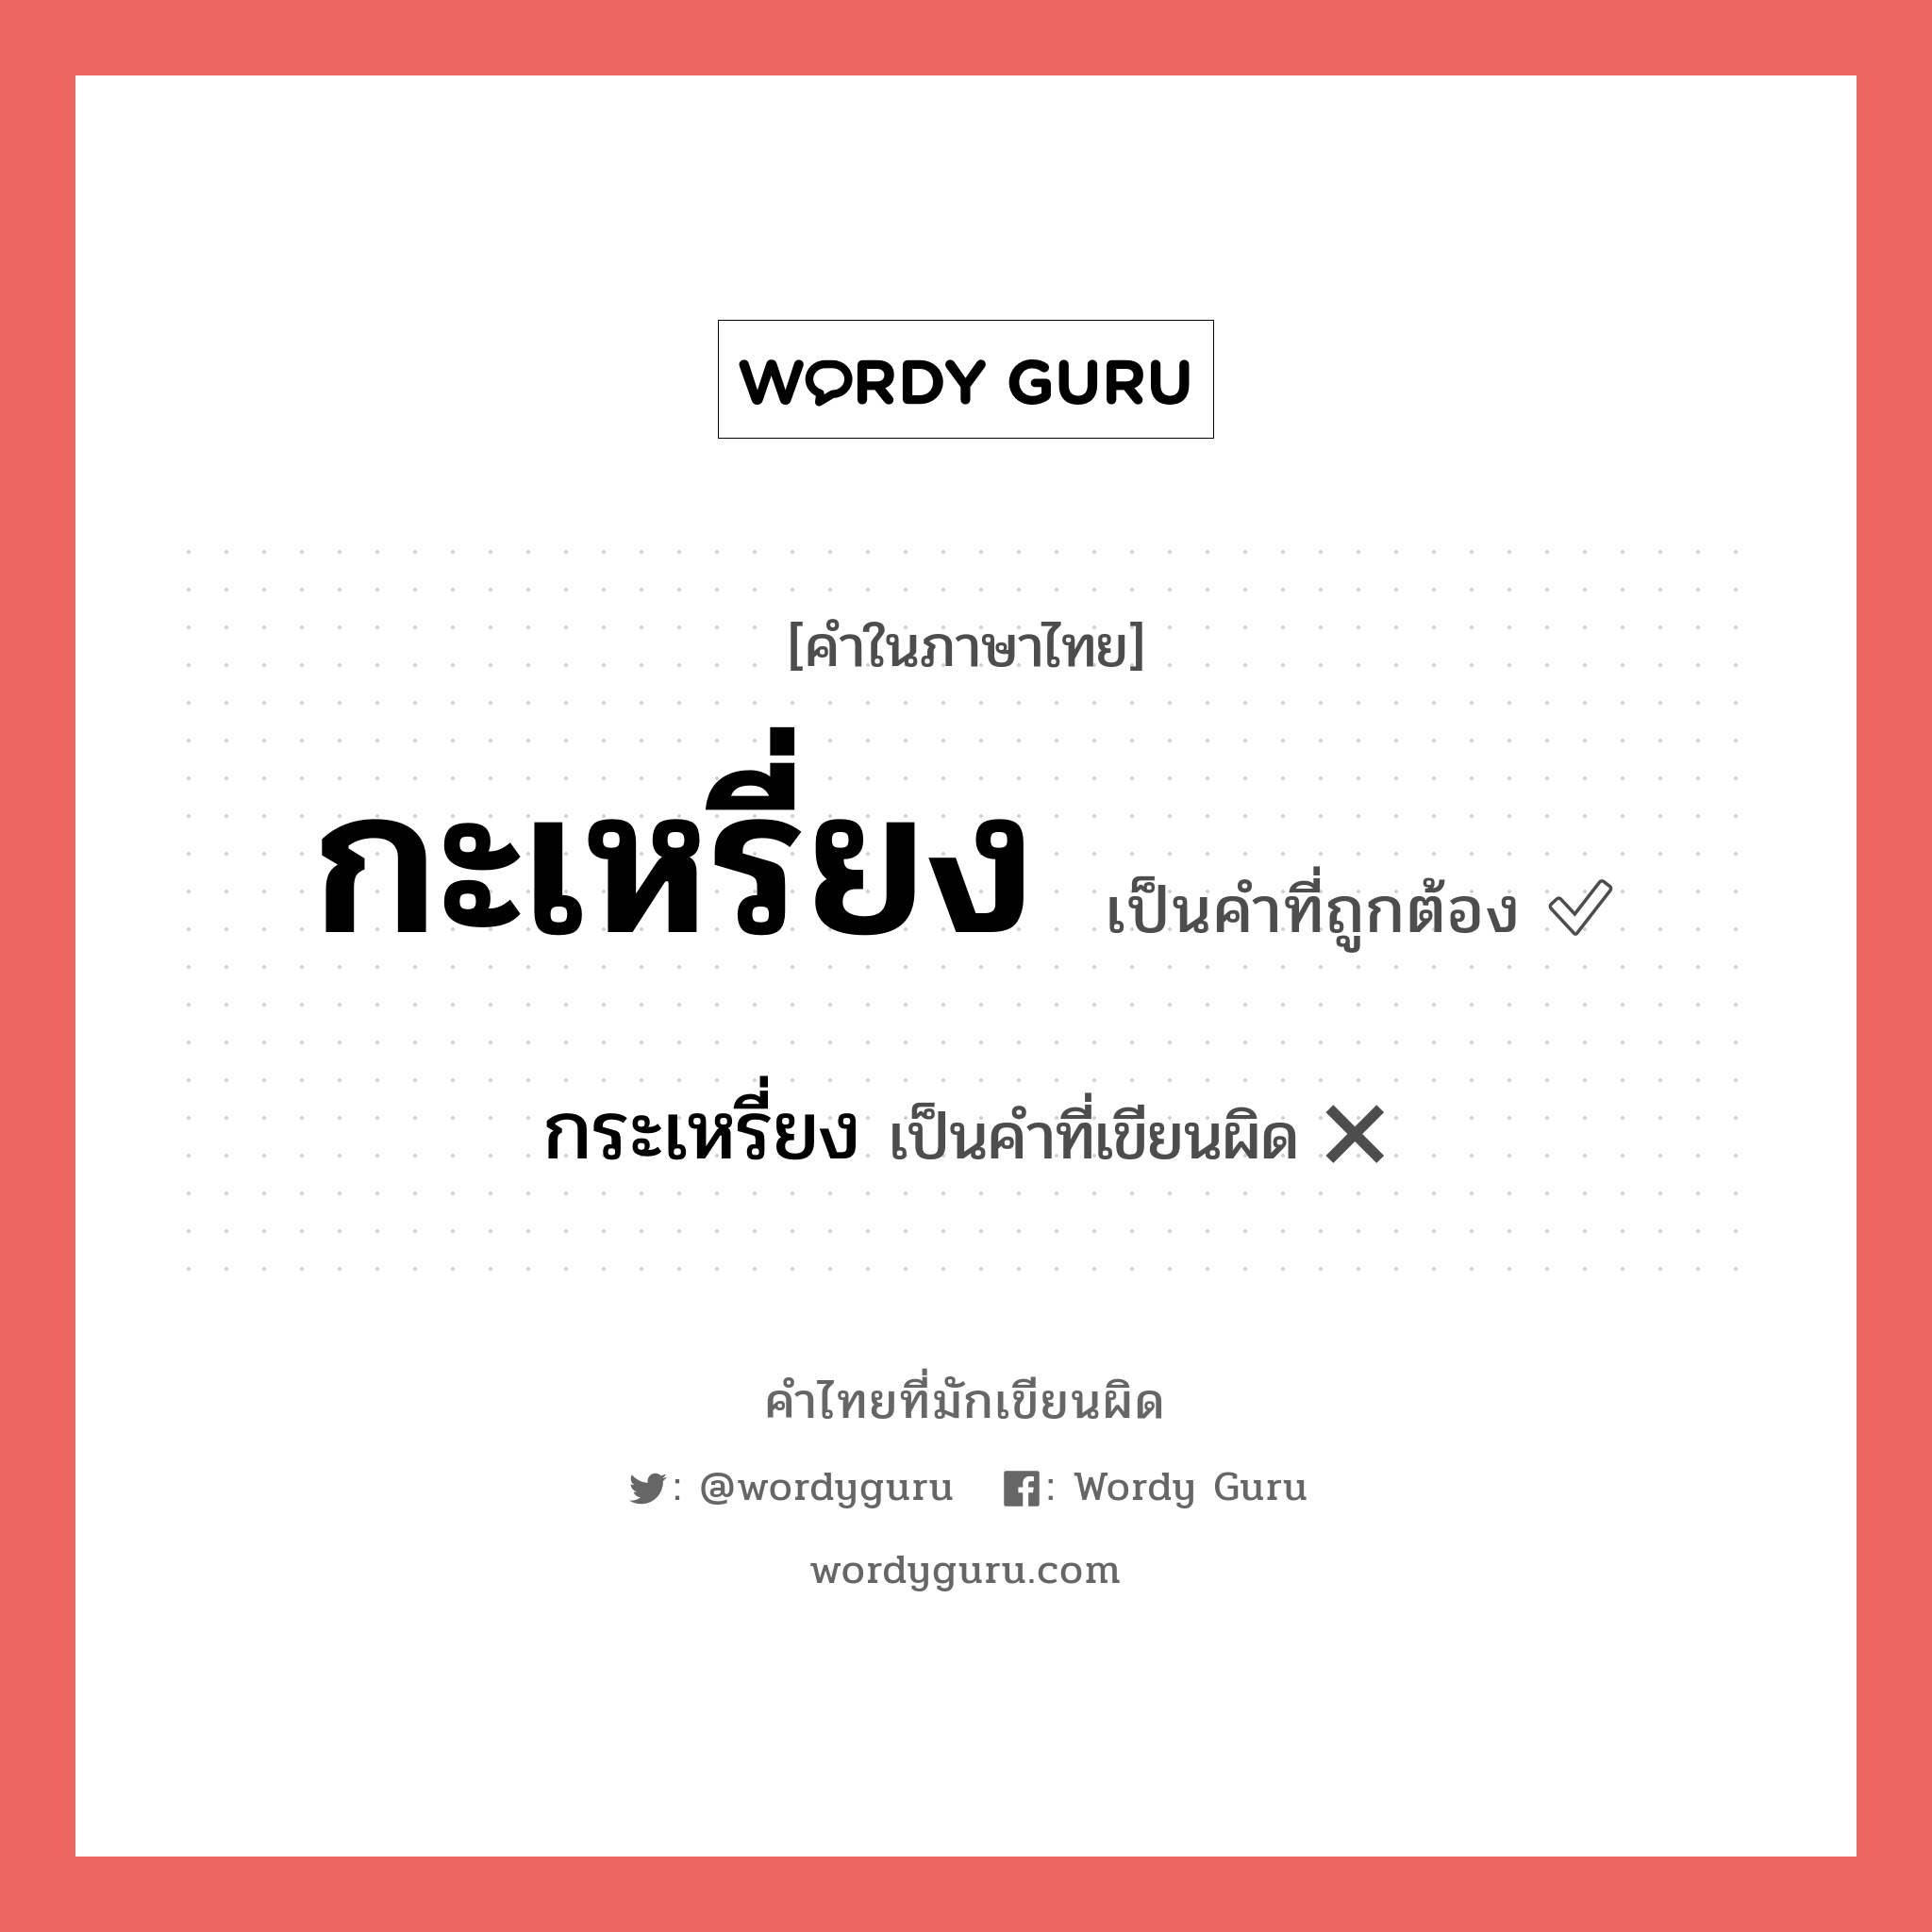 กระเหรี่ยง หรือ กะเหรี่ยง คำไหนเขียนถูก?, คำในภาษาไทยที่มักเขียนผิด กระเหรี่ยง คำที่ผิด ❌ กะเหรี่ยง